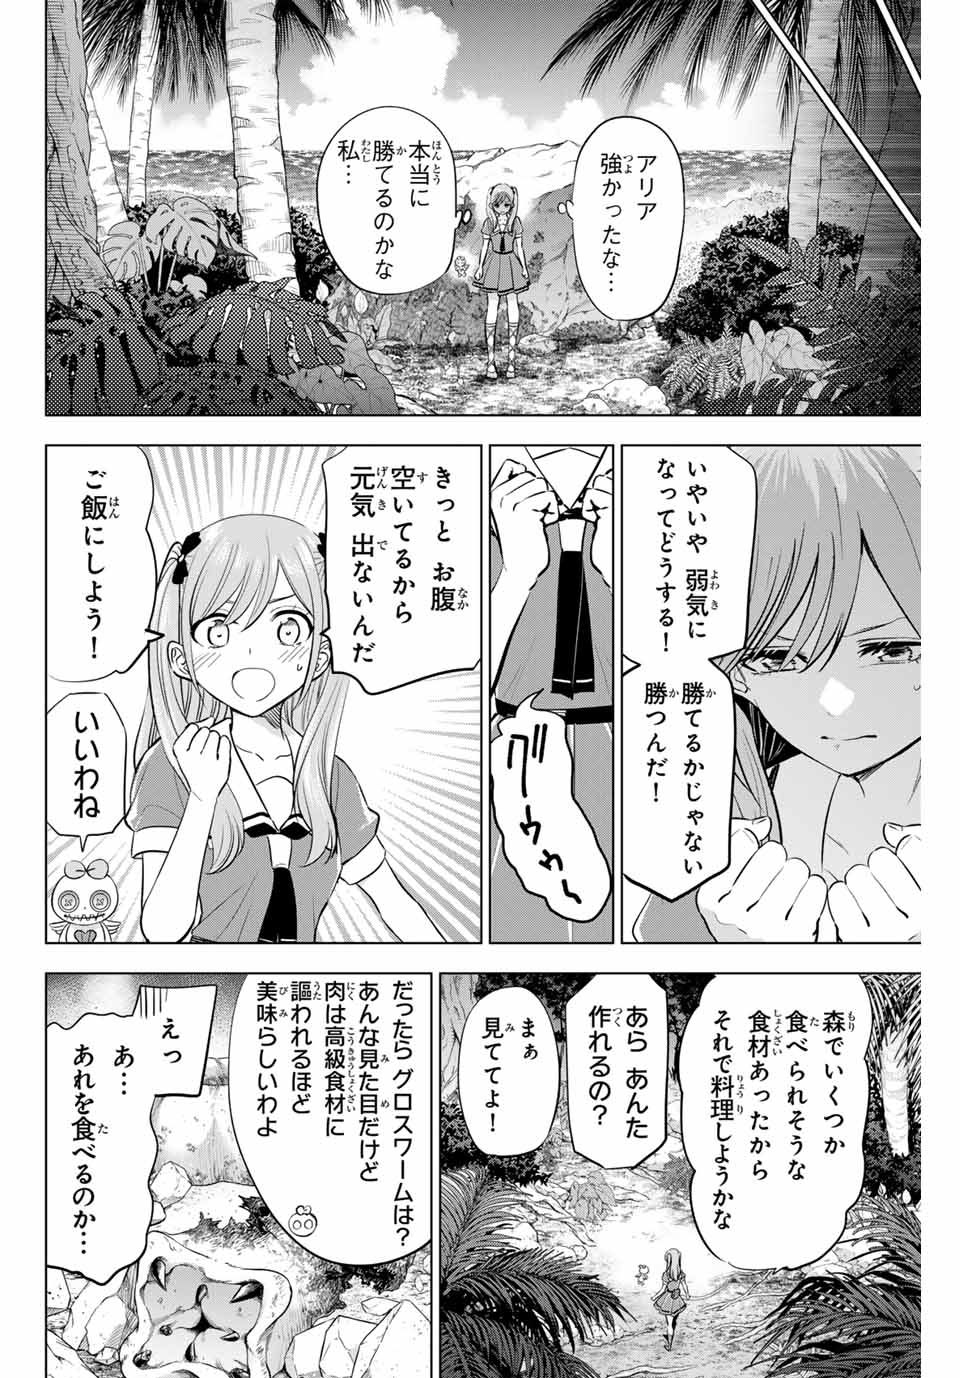 Kuroneko to Majo no Kyoushitsu - Chapter 48 - Page 4